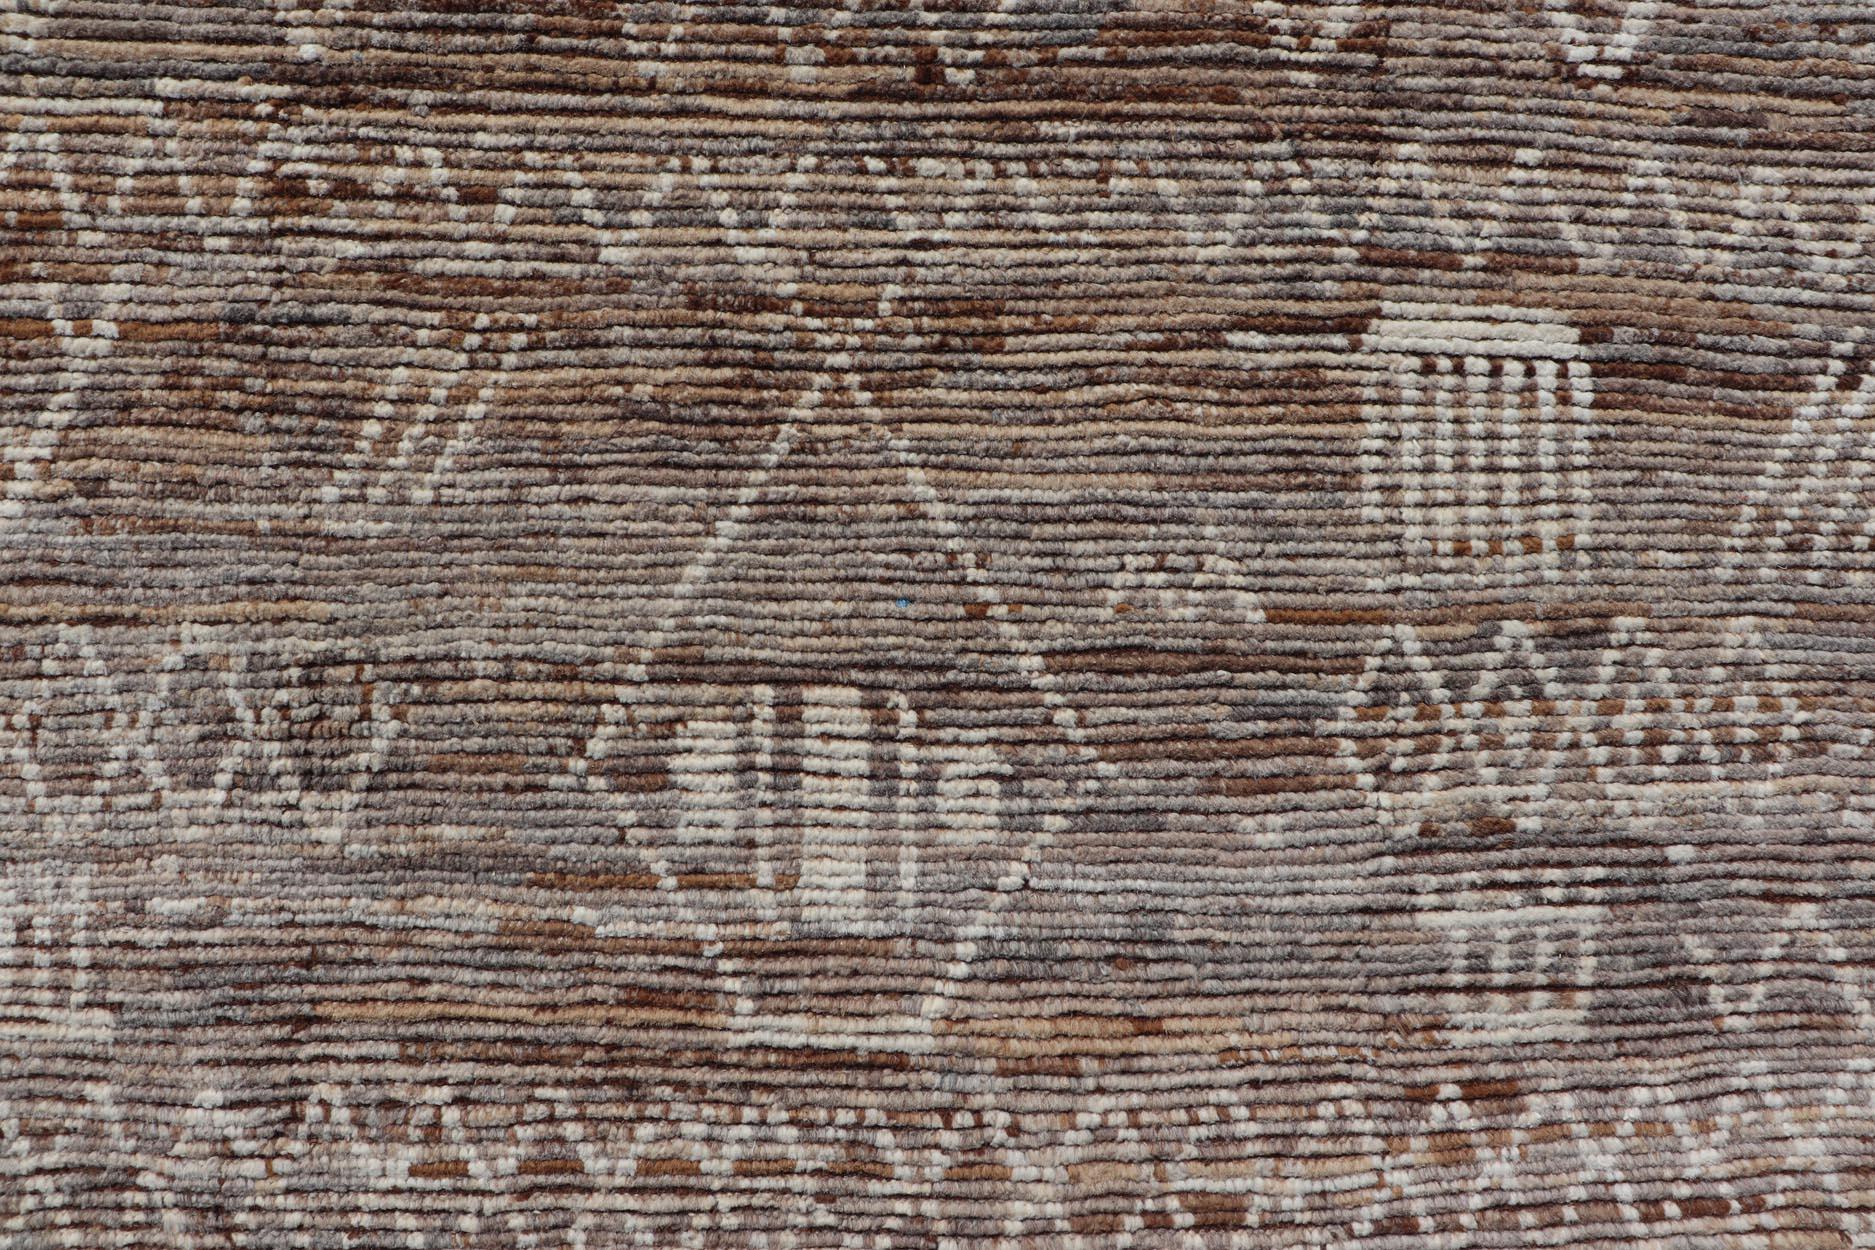 Moderner Teppich im marokkanischen Stil mit Rautenmuster in erdigen Tönen. Keivan Woven Arts; Teppich SNK-1864, Herkunftsland / Art: Afghanistan / Modern Casual, etwa Anfang des 21. Jahrhunderts.
Maße: 6'5 x 9'4 
Dieser moderne, lässige